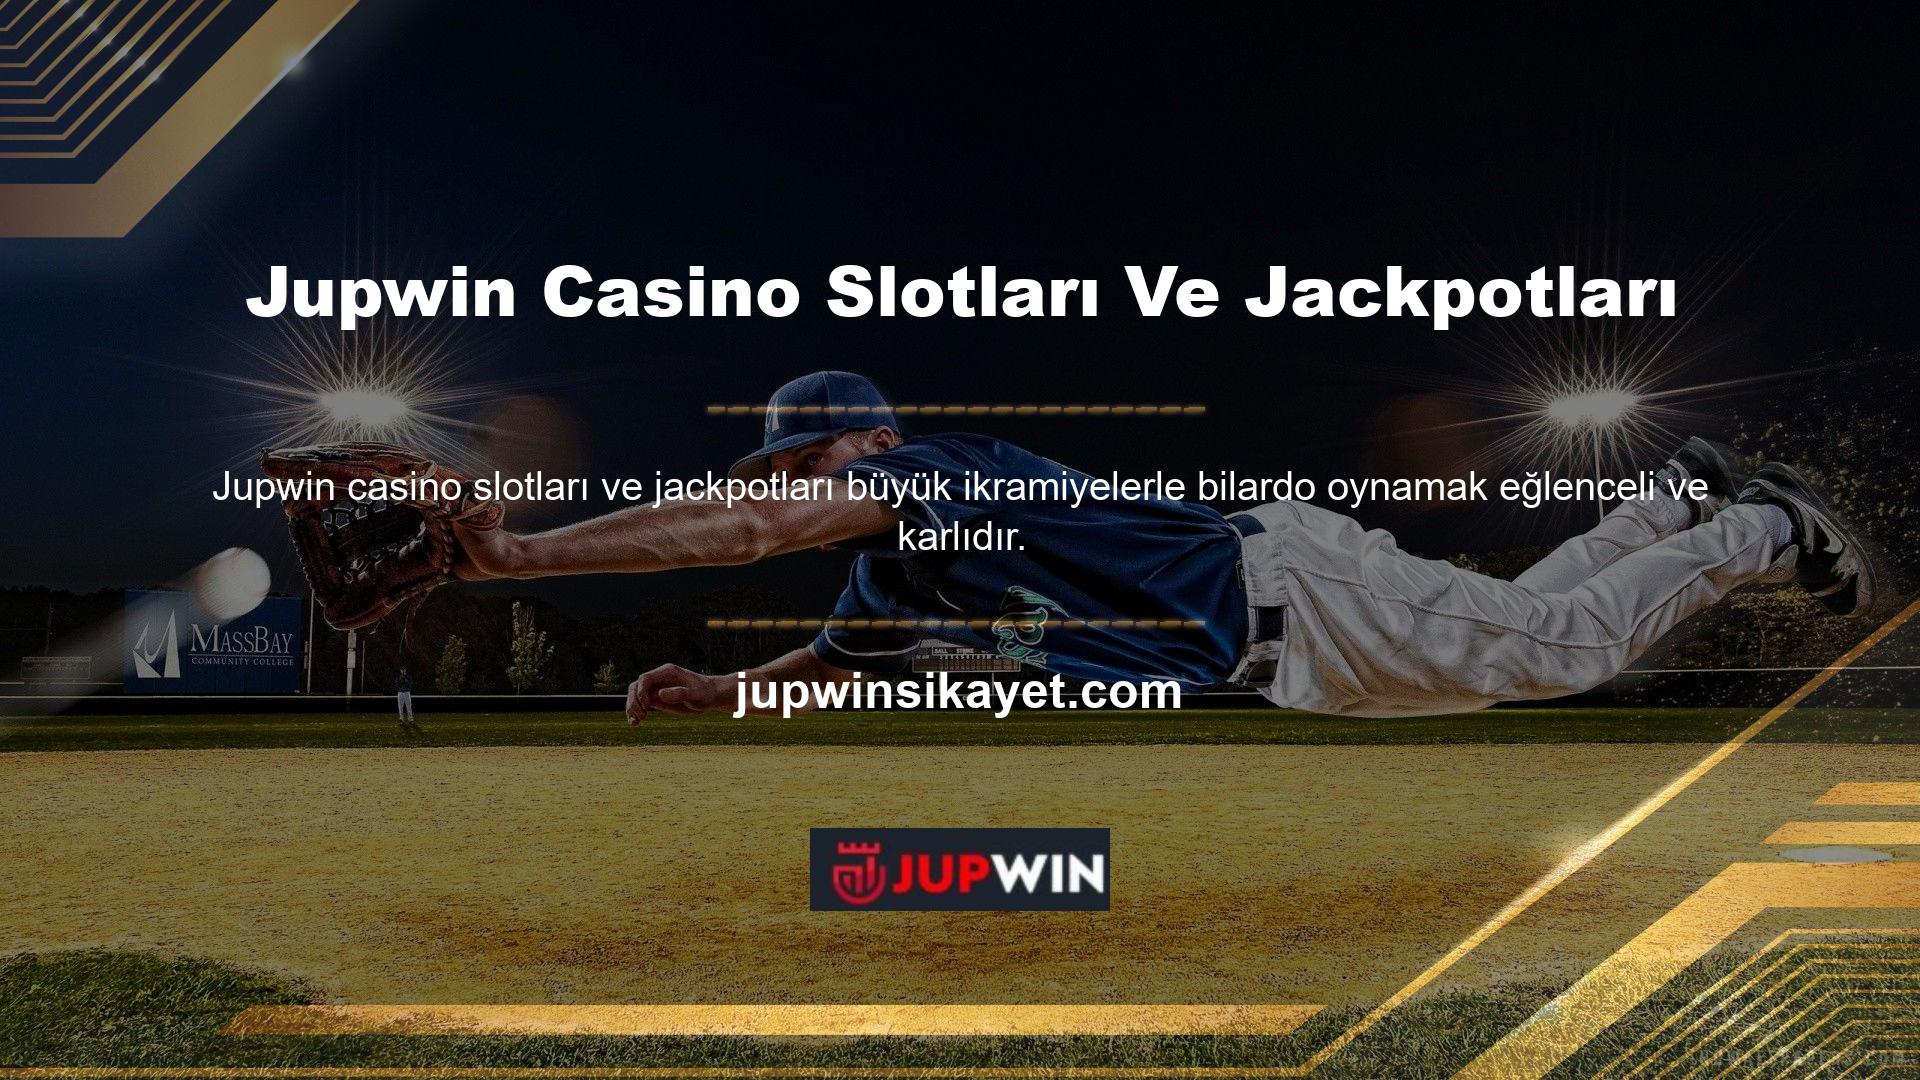 Bunun bilincinde olan Jupwin Casino, slot ve bonuslar için yeni ve modern seçenekler sunmaktadır